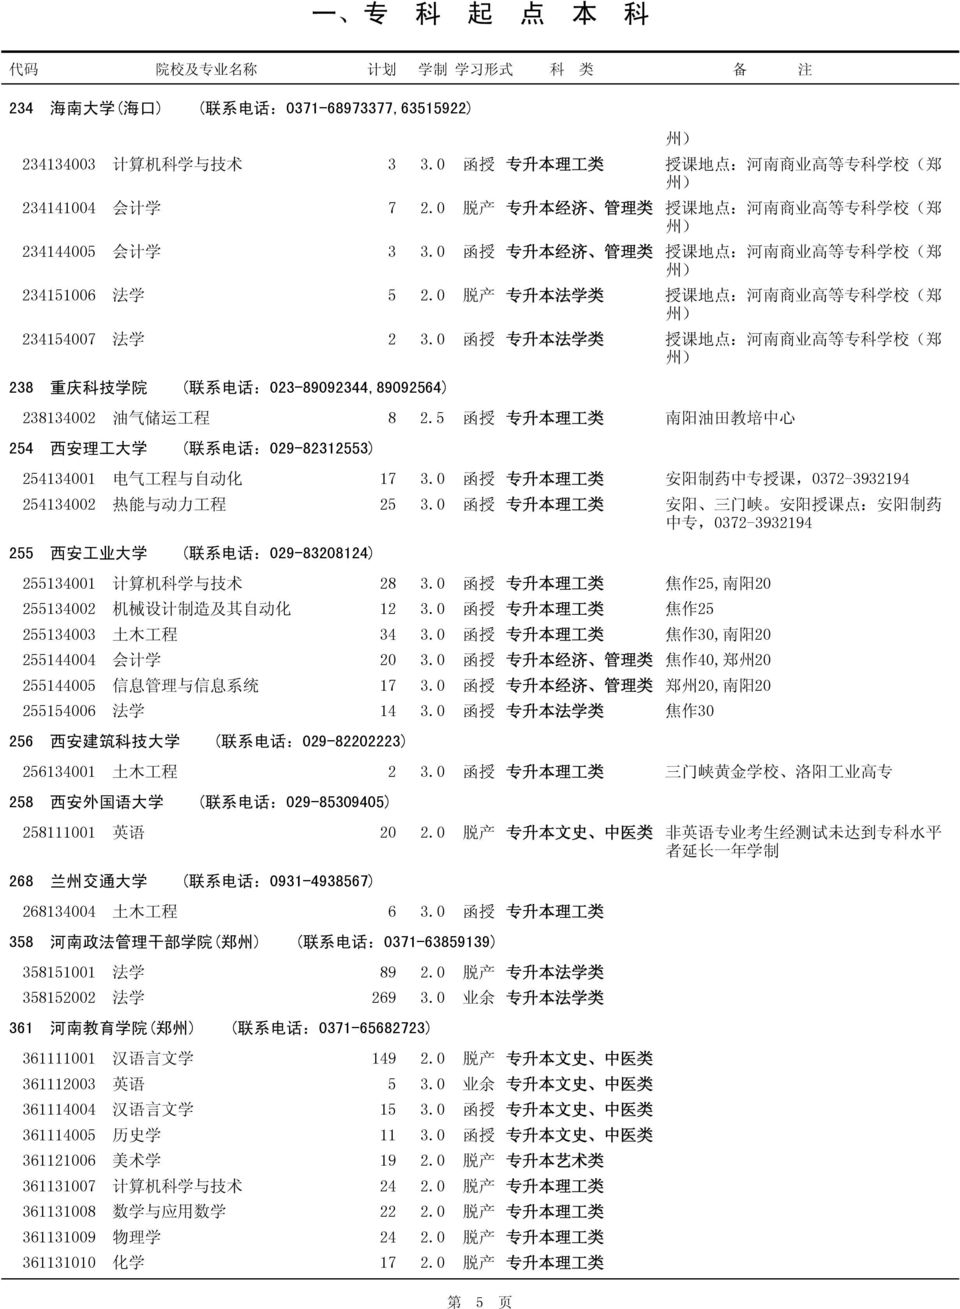 0 脱 产 专 升 本 法 学 类 授 课 地 点 : 河 南 商 业 高 等 专 科 学 校 ( 郑 州 ) 234154007 法 学 2 3.